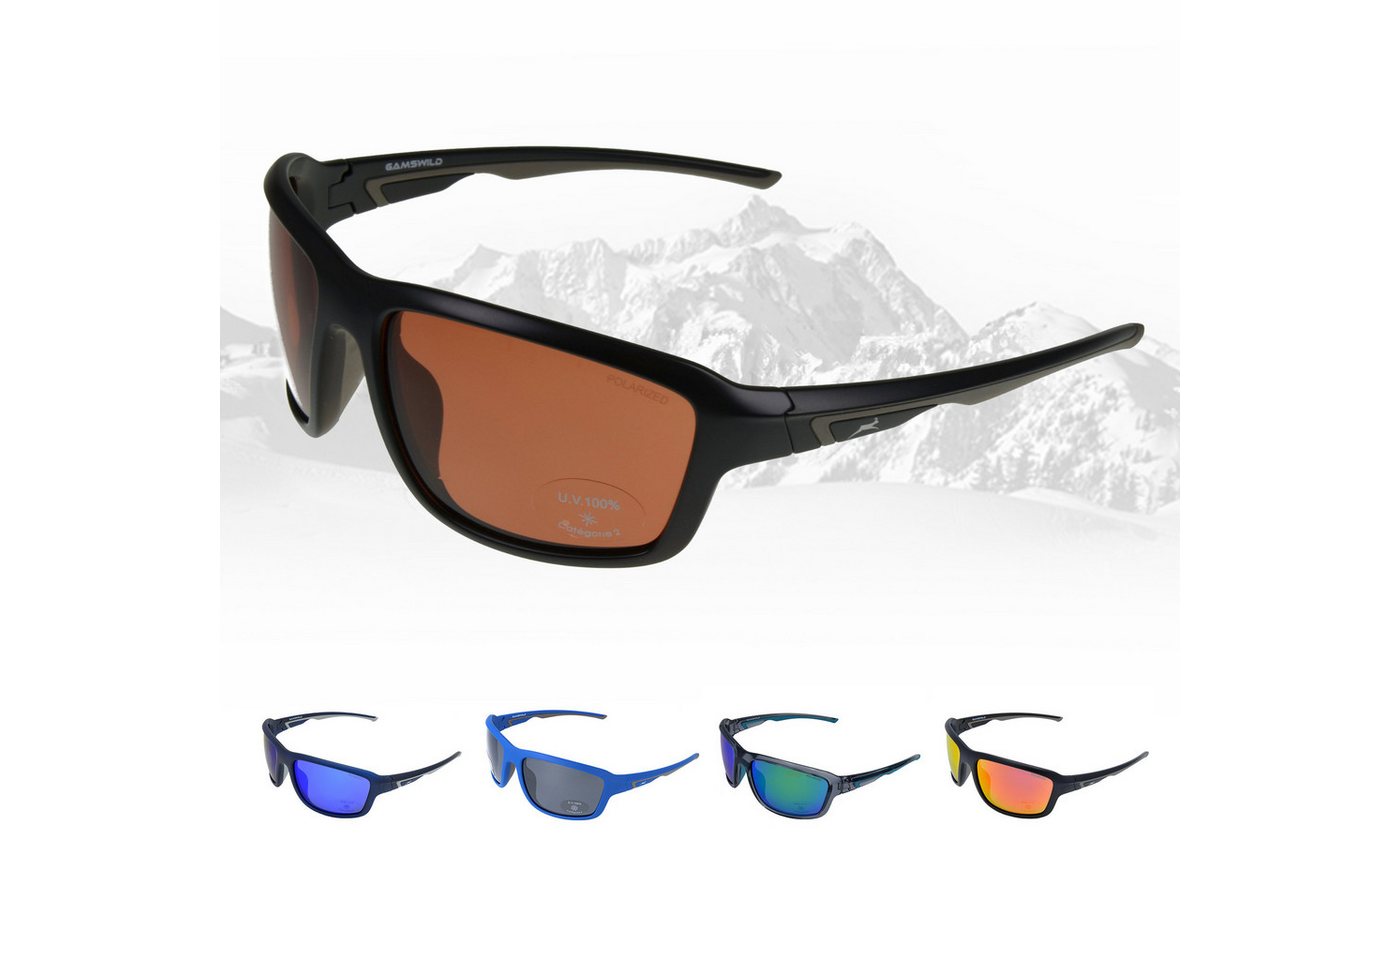 Gamswild Sportbrille UV400 Sonnenbrille Skibrille Fahrradbrille TR90 Damen Herren, Modell WS7536 blau, blau-grau, grün-türkis, pink-orange, schwarz-braun von Gamswild